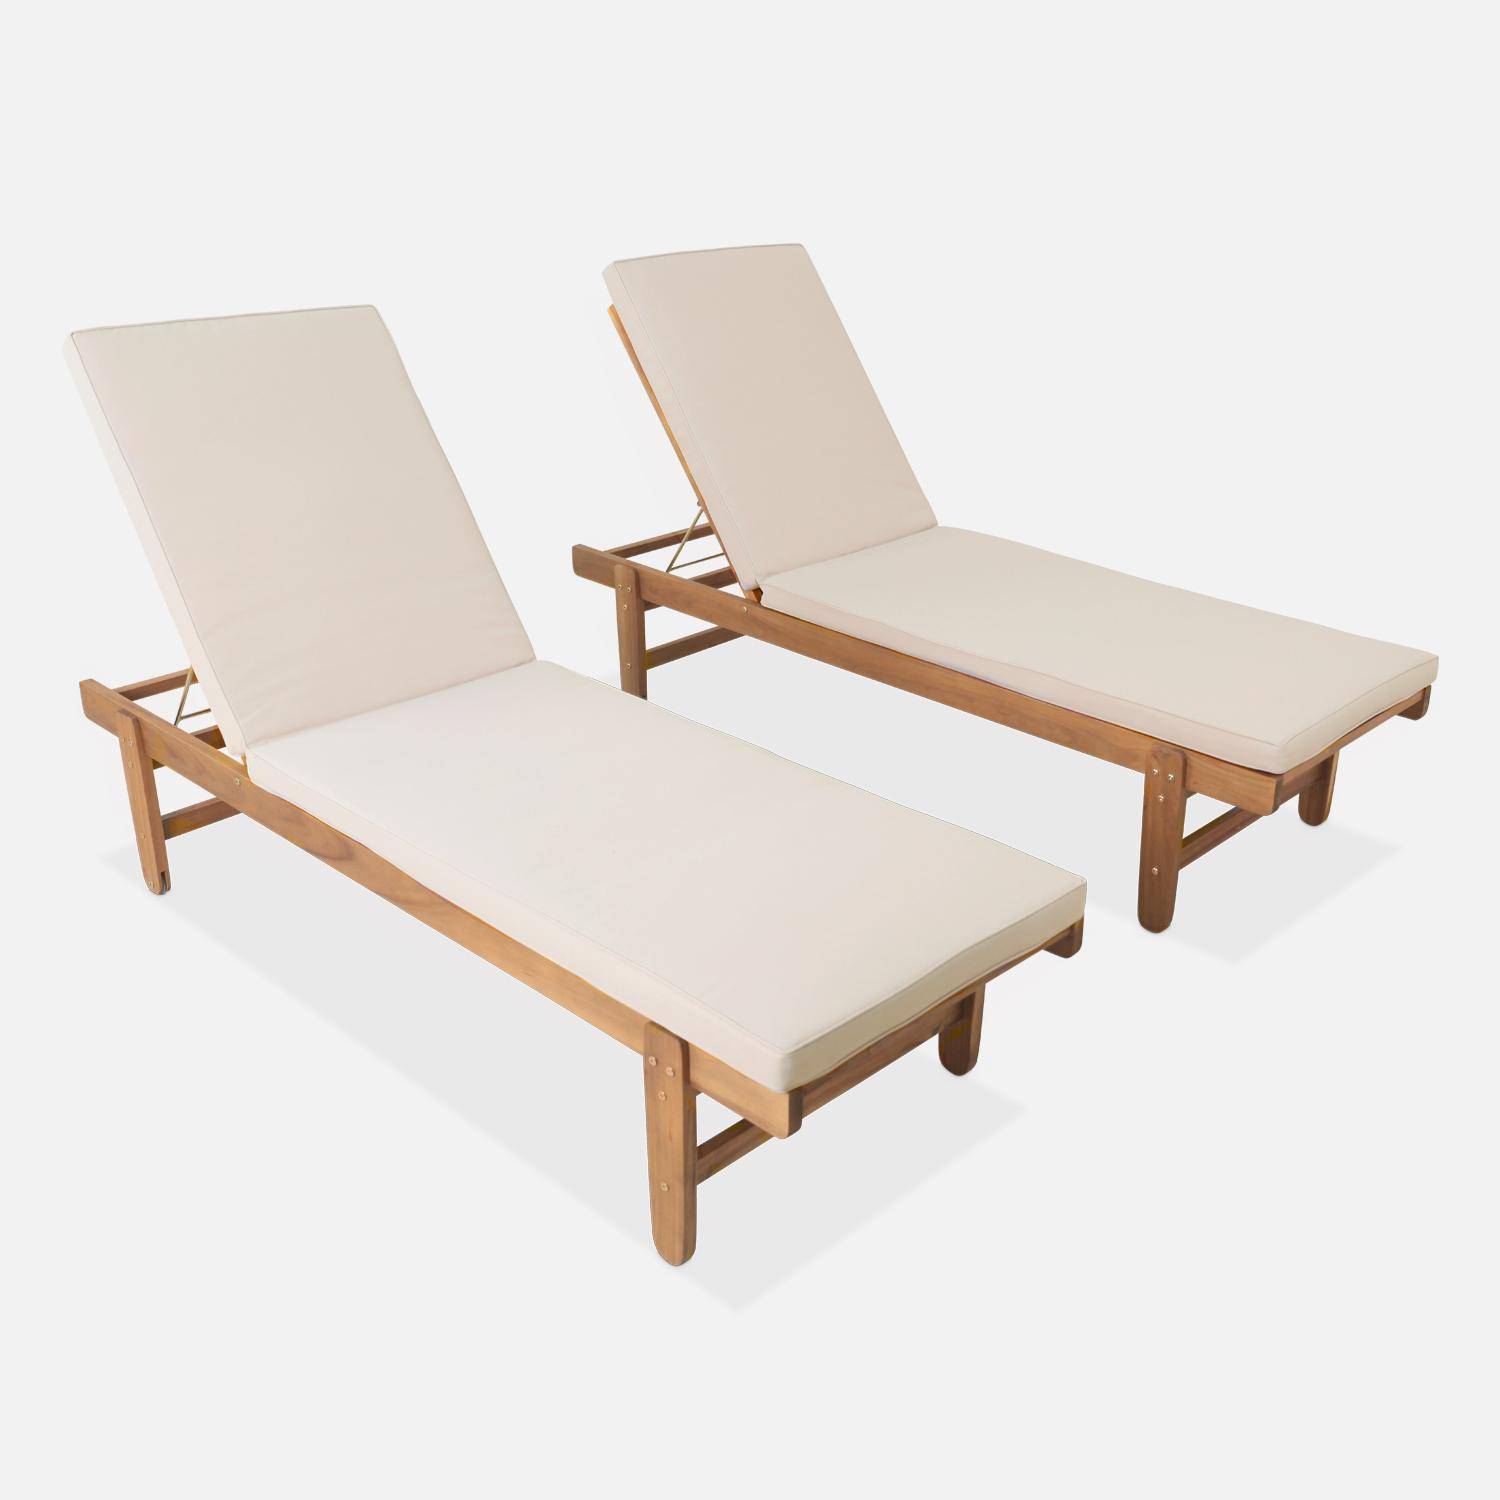 Set van 2 ligstoelen van FSC Acacia – AREQUIPA – Ligstoelen met beige kussen en wielen, multipositioneel,sweeek,Photo2